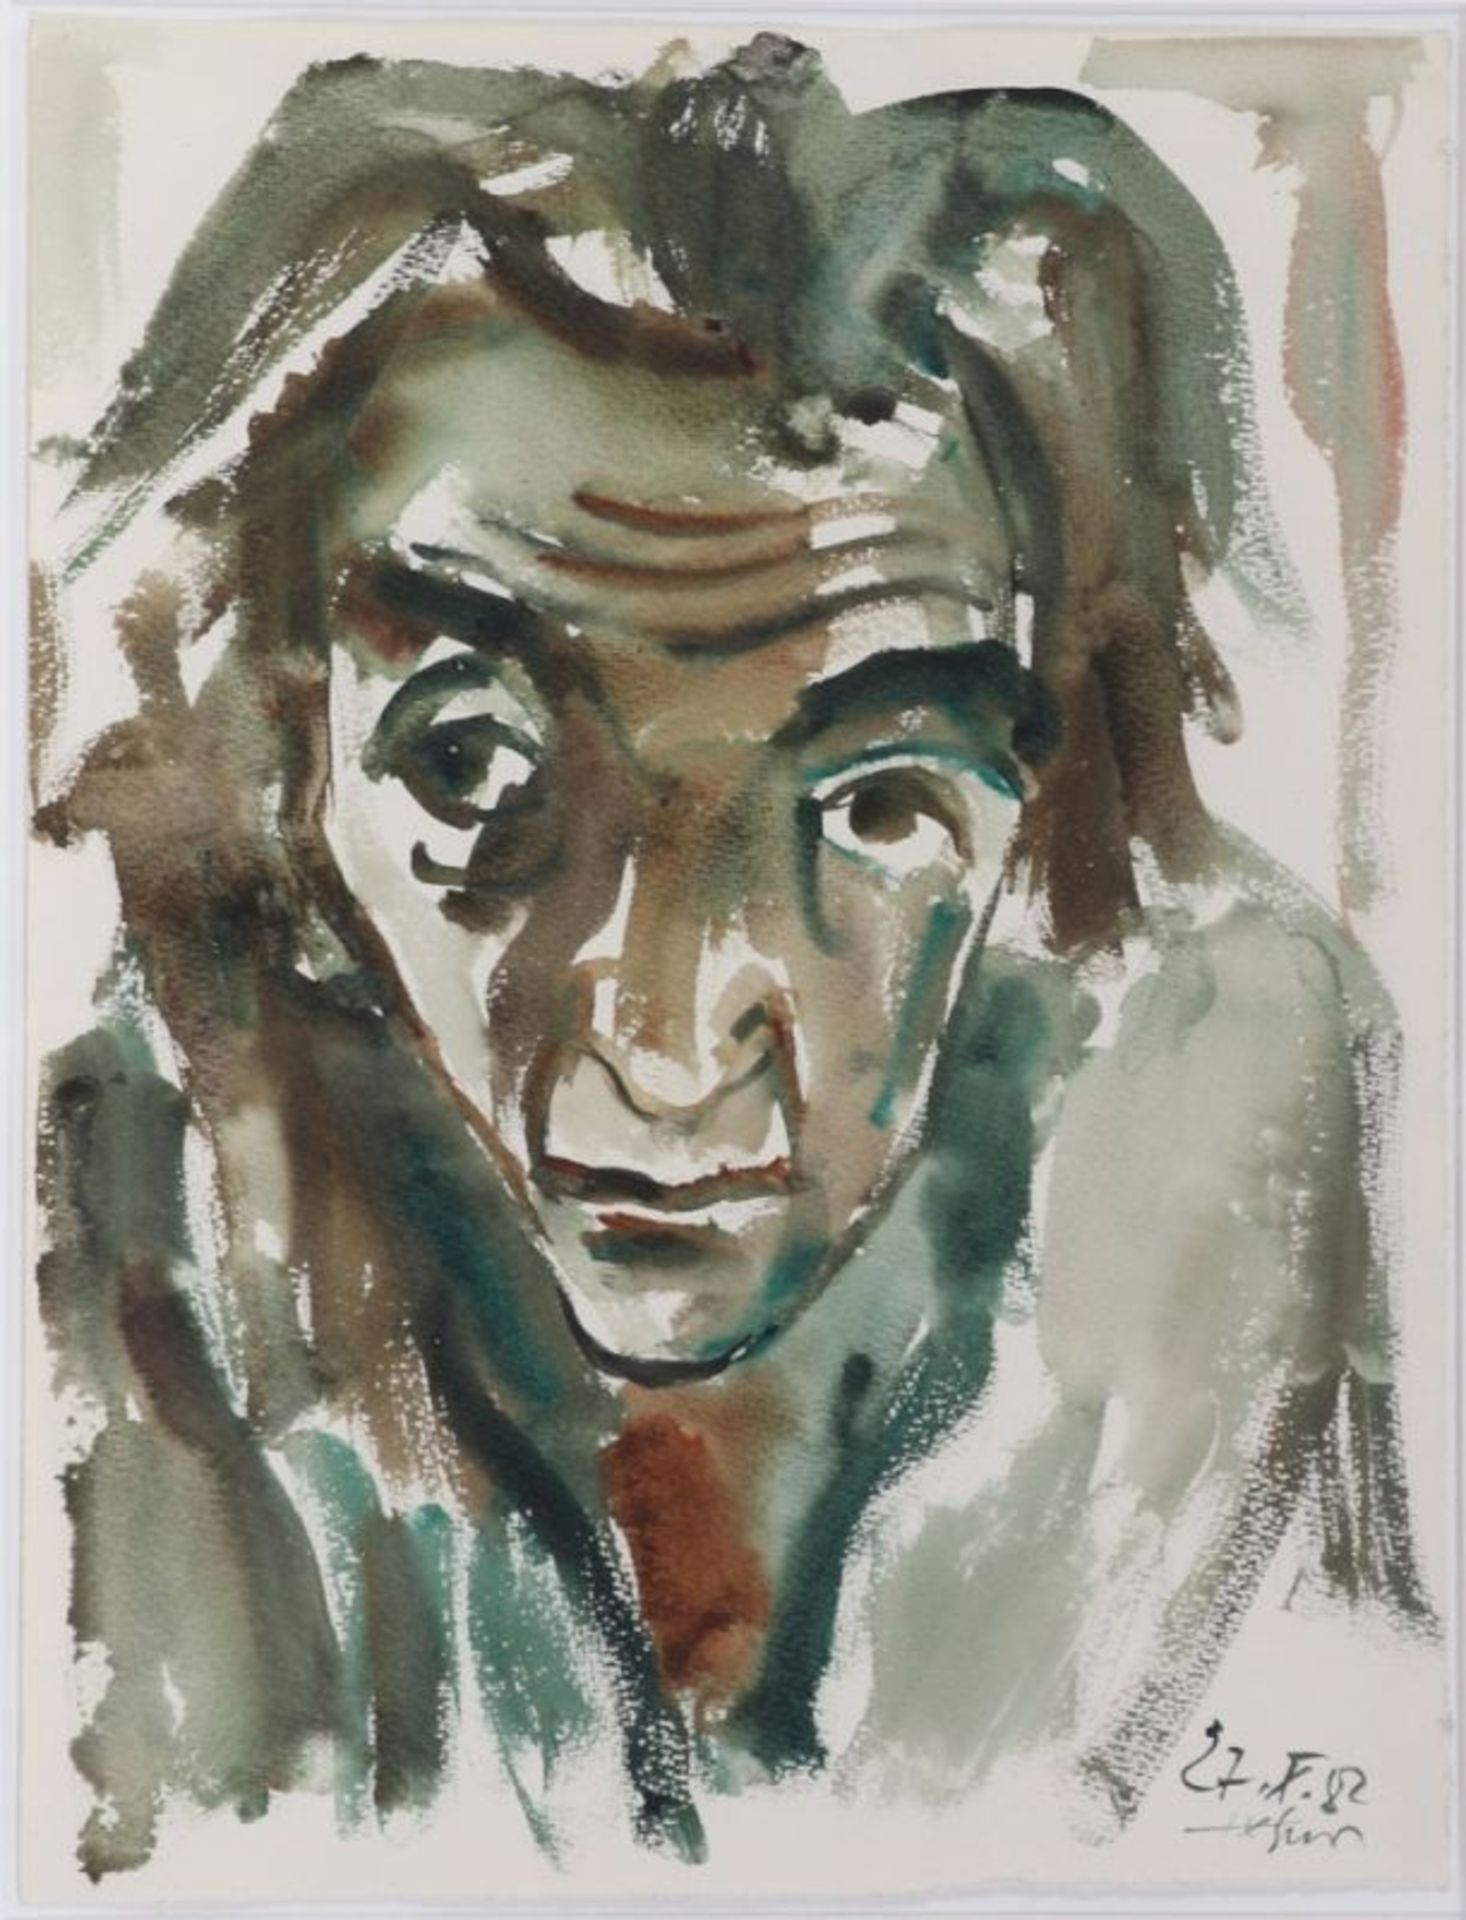 Heinz TetznerGersdorf 1920 - 2007 Gersdorf - "Selbst" - Aquarell/Papier. 48,5 x 37,2 cm. Dat. und